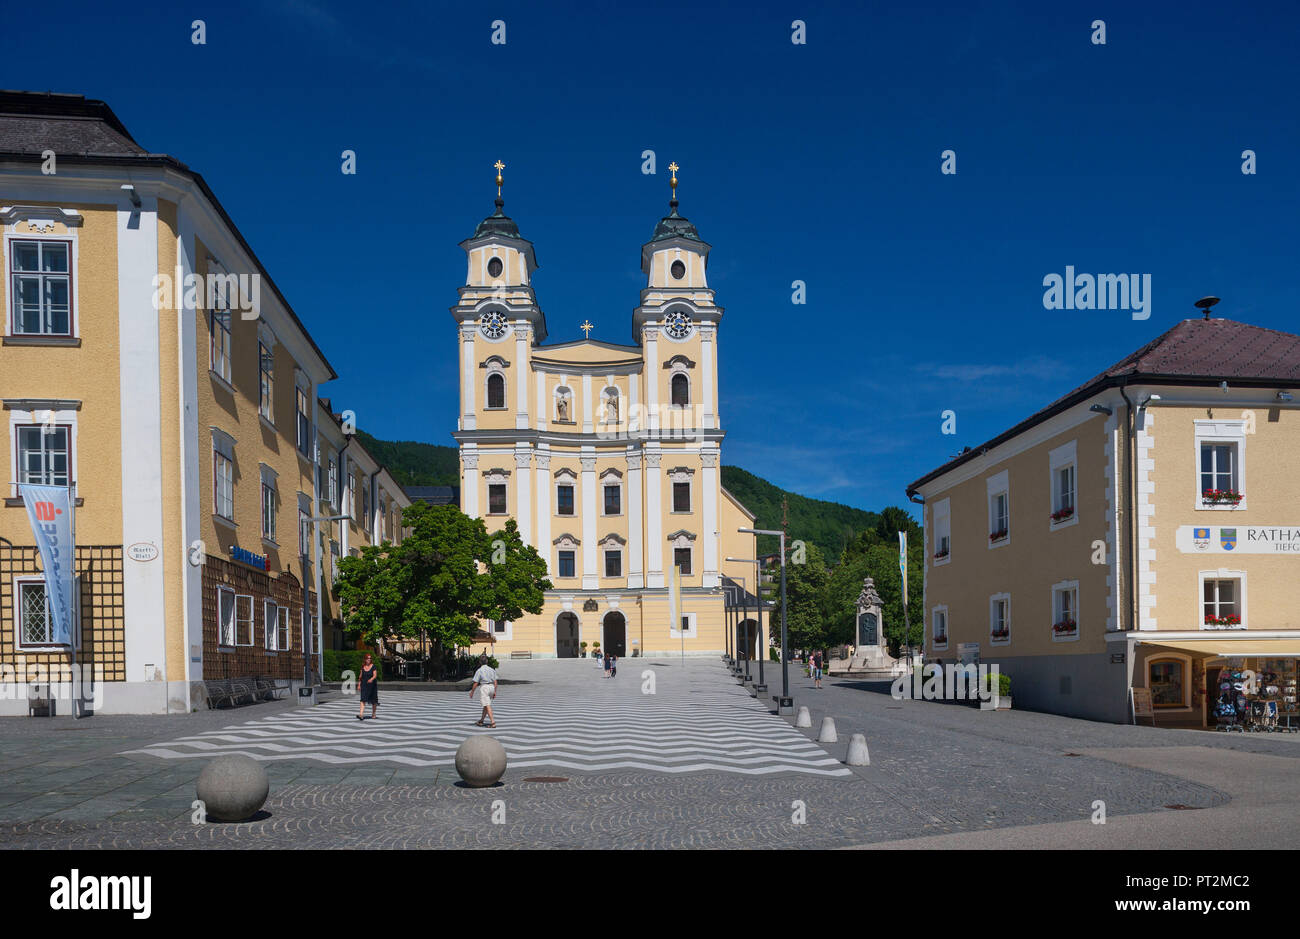 Austria, Upper Austria, Salzkammergut, Mondsee, Market Square, Basilica of Saint Michael, Stock Photo